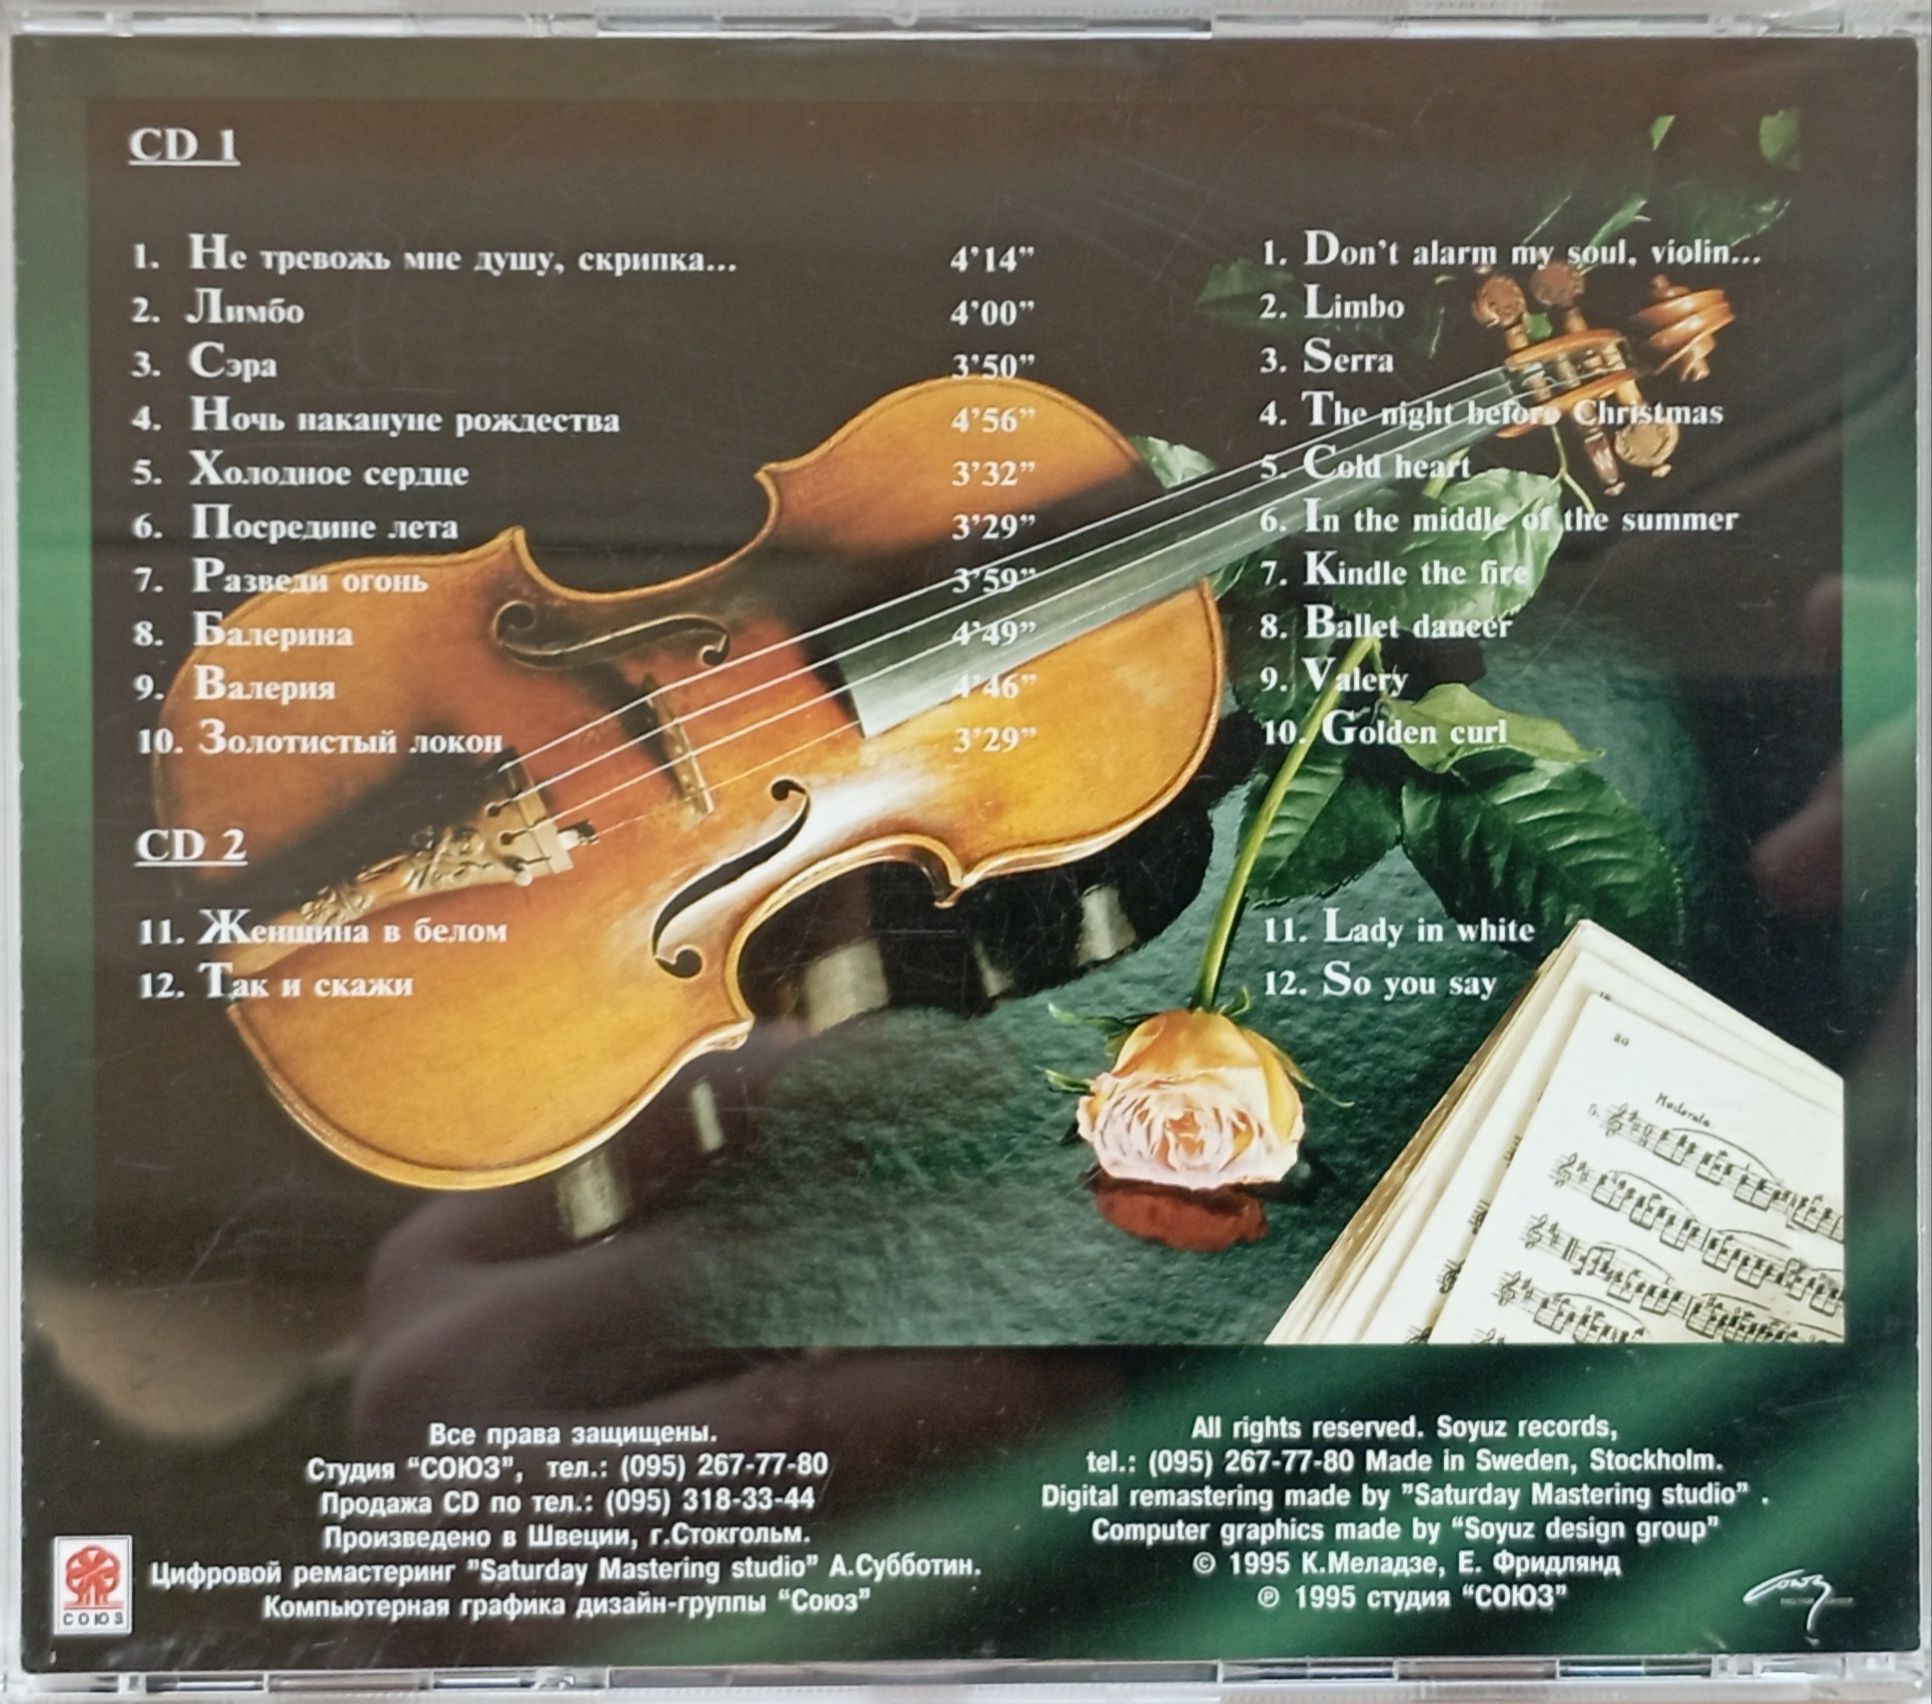 Валерий Меладзе cd «Сэ́ра» 1995 год